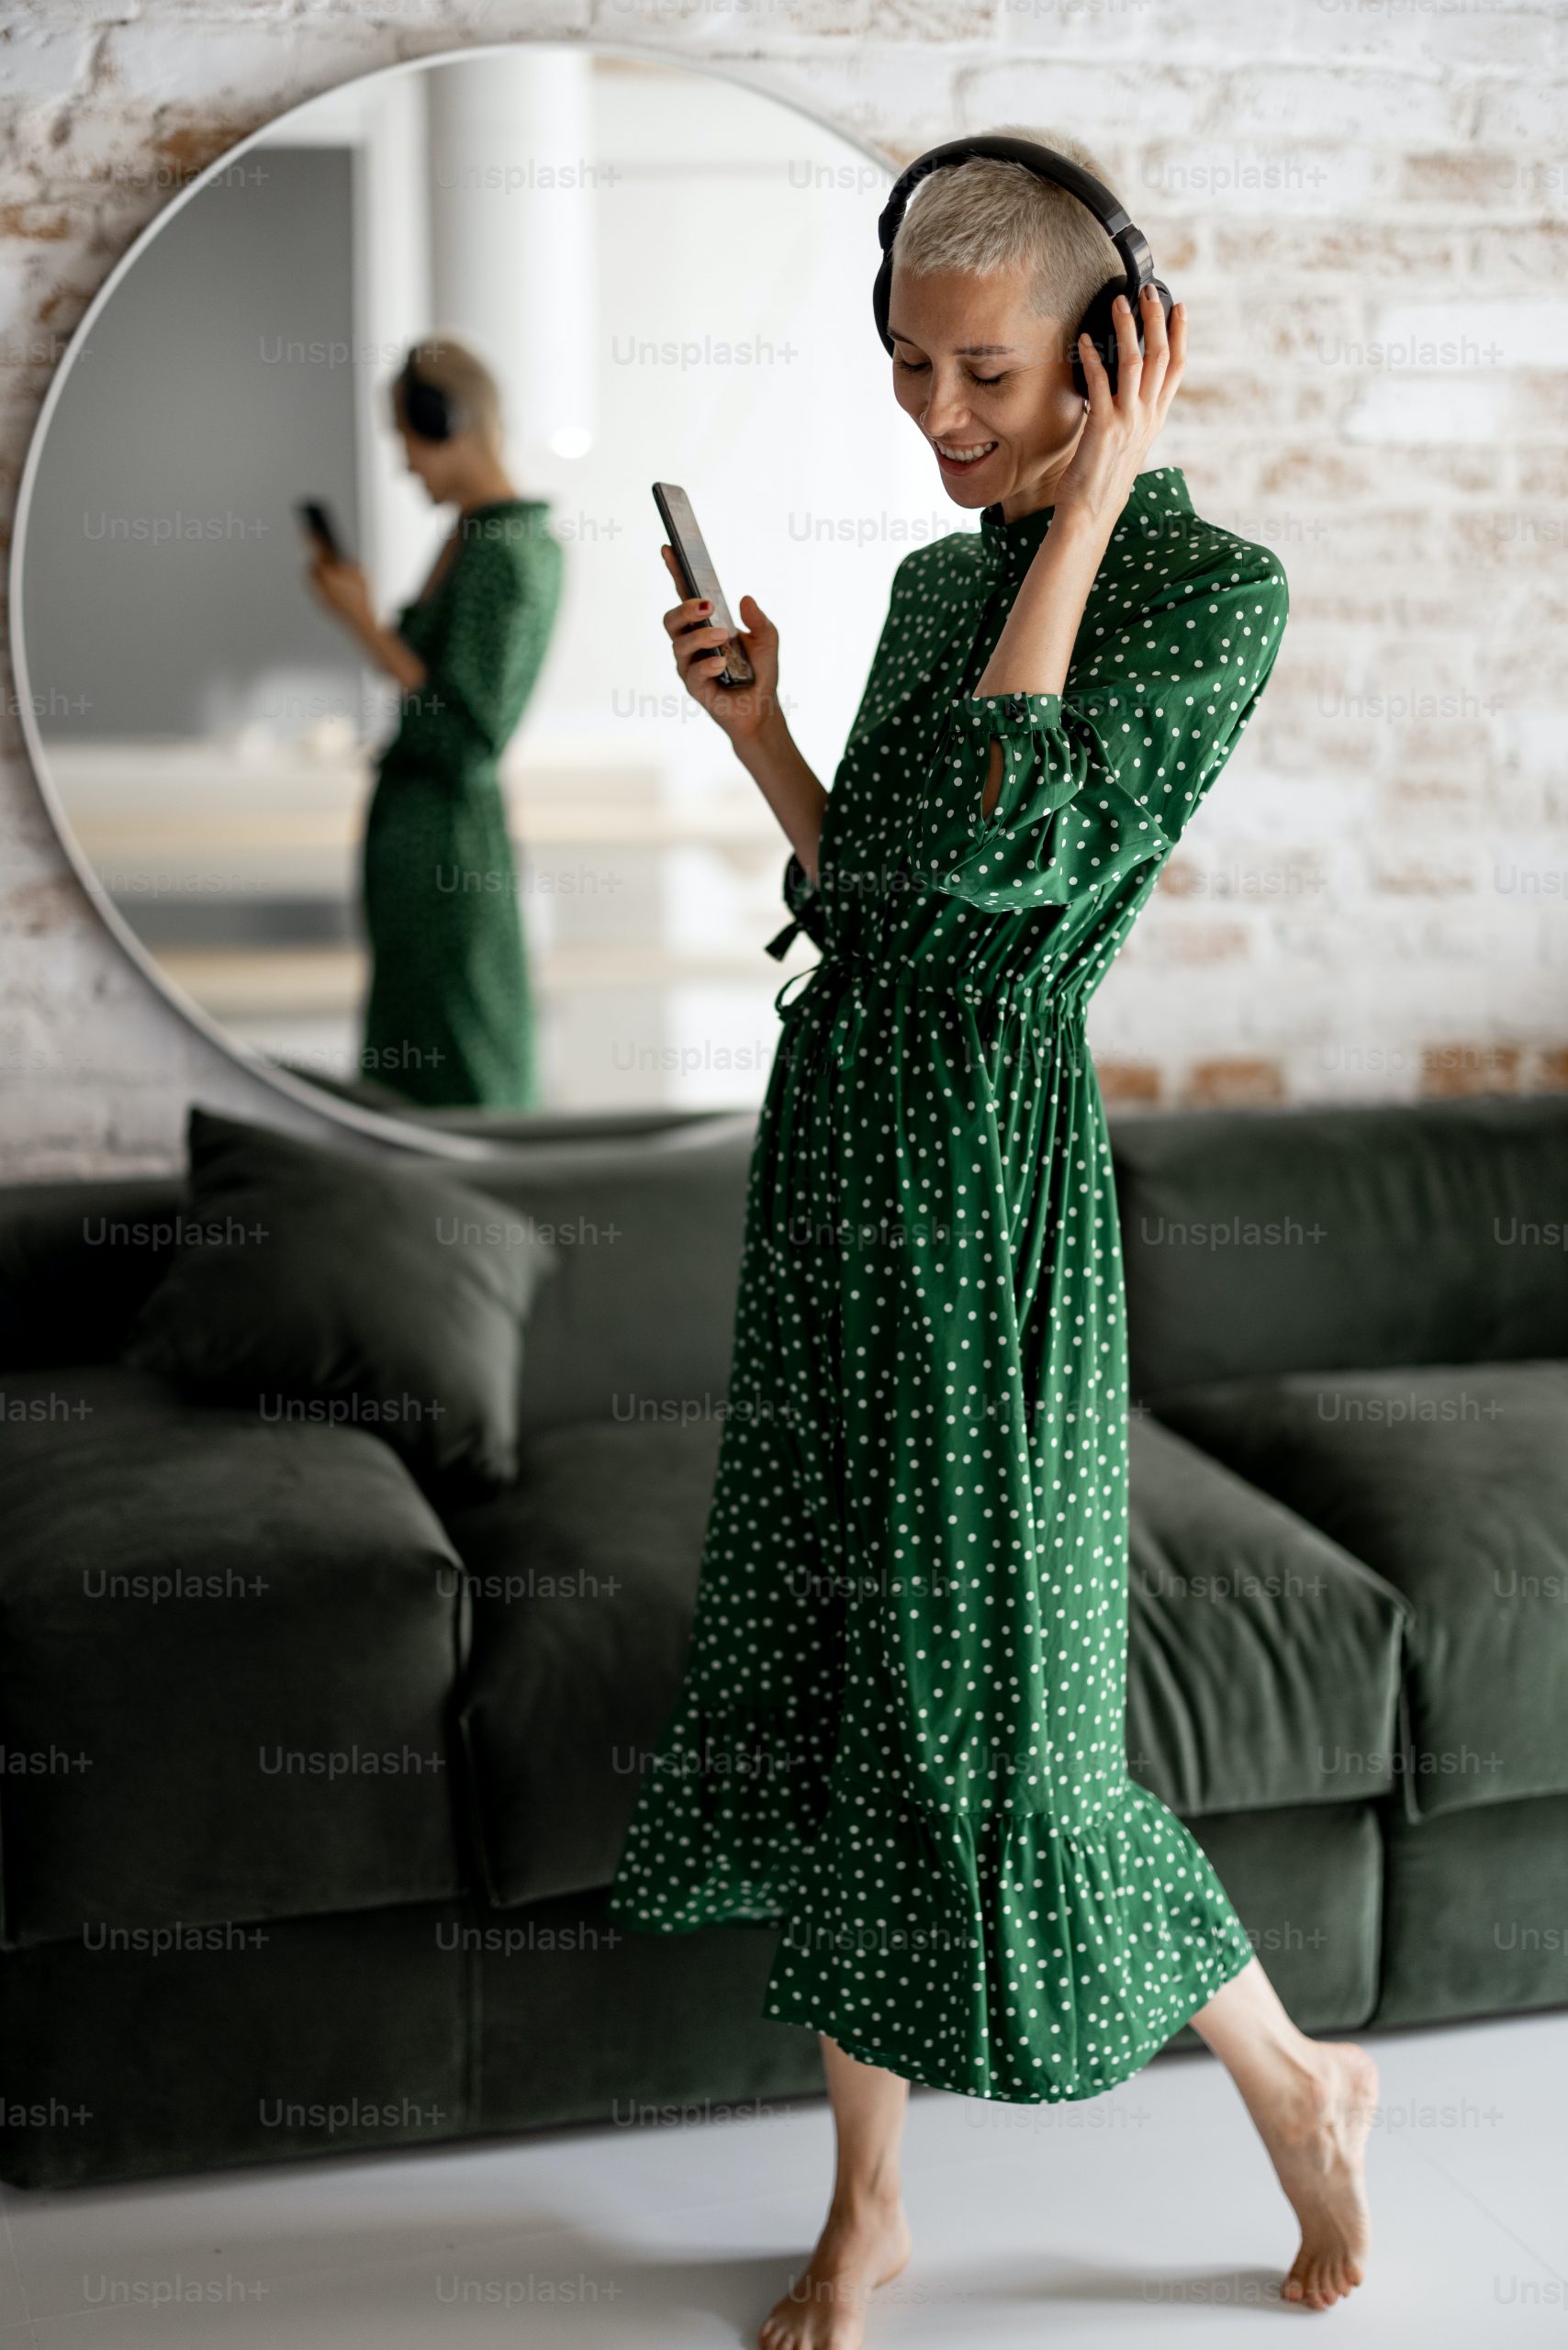 Une femme vêtue d'une robe verte à pois, écoutant de la musique tout en portant ses bijoux préférés.